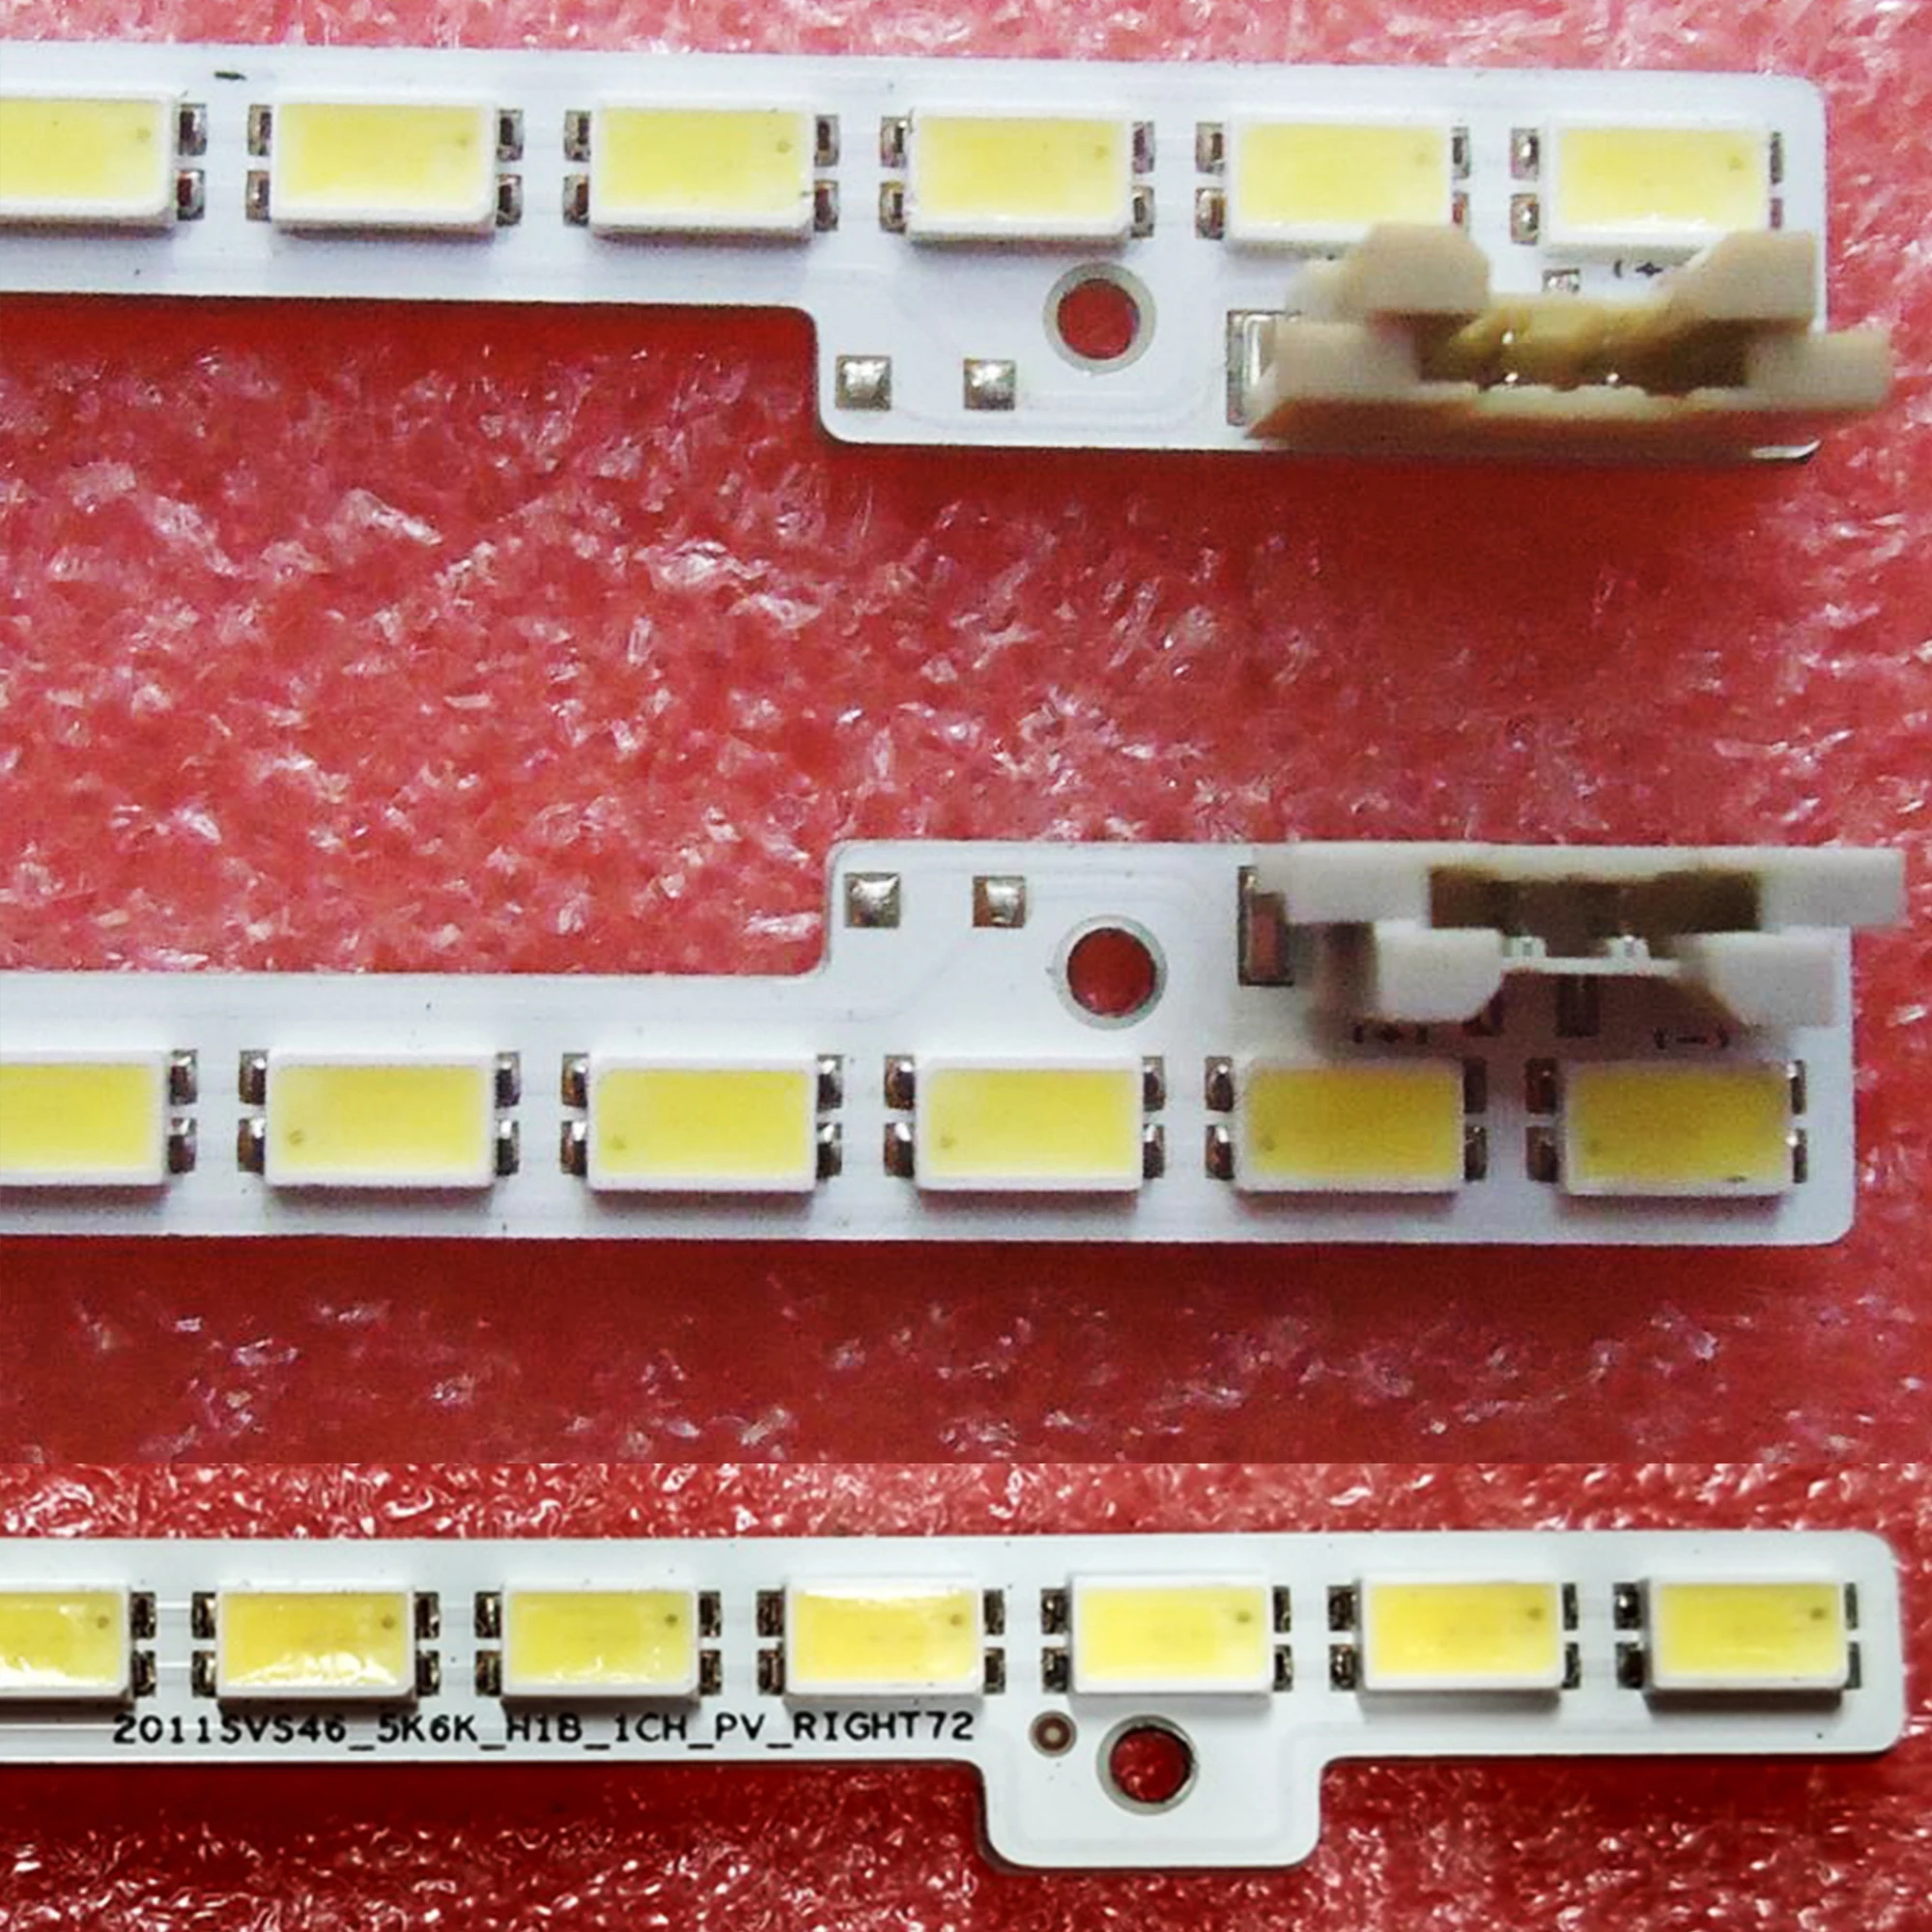 TV Lamps LED Backlight Strips For Samsung UE46D5000 UE46D5500 LED Bars 2011SVS46-FHD-5K6K-LEFT Bands Rulers 2011SVS46_5K6K_H1B 4 piece led array bars for samsung ue32j5500ak ue32j5500au ue32j5500aw 32 inches tv backlight led strip light matrix lamps bands